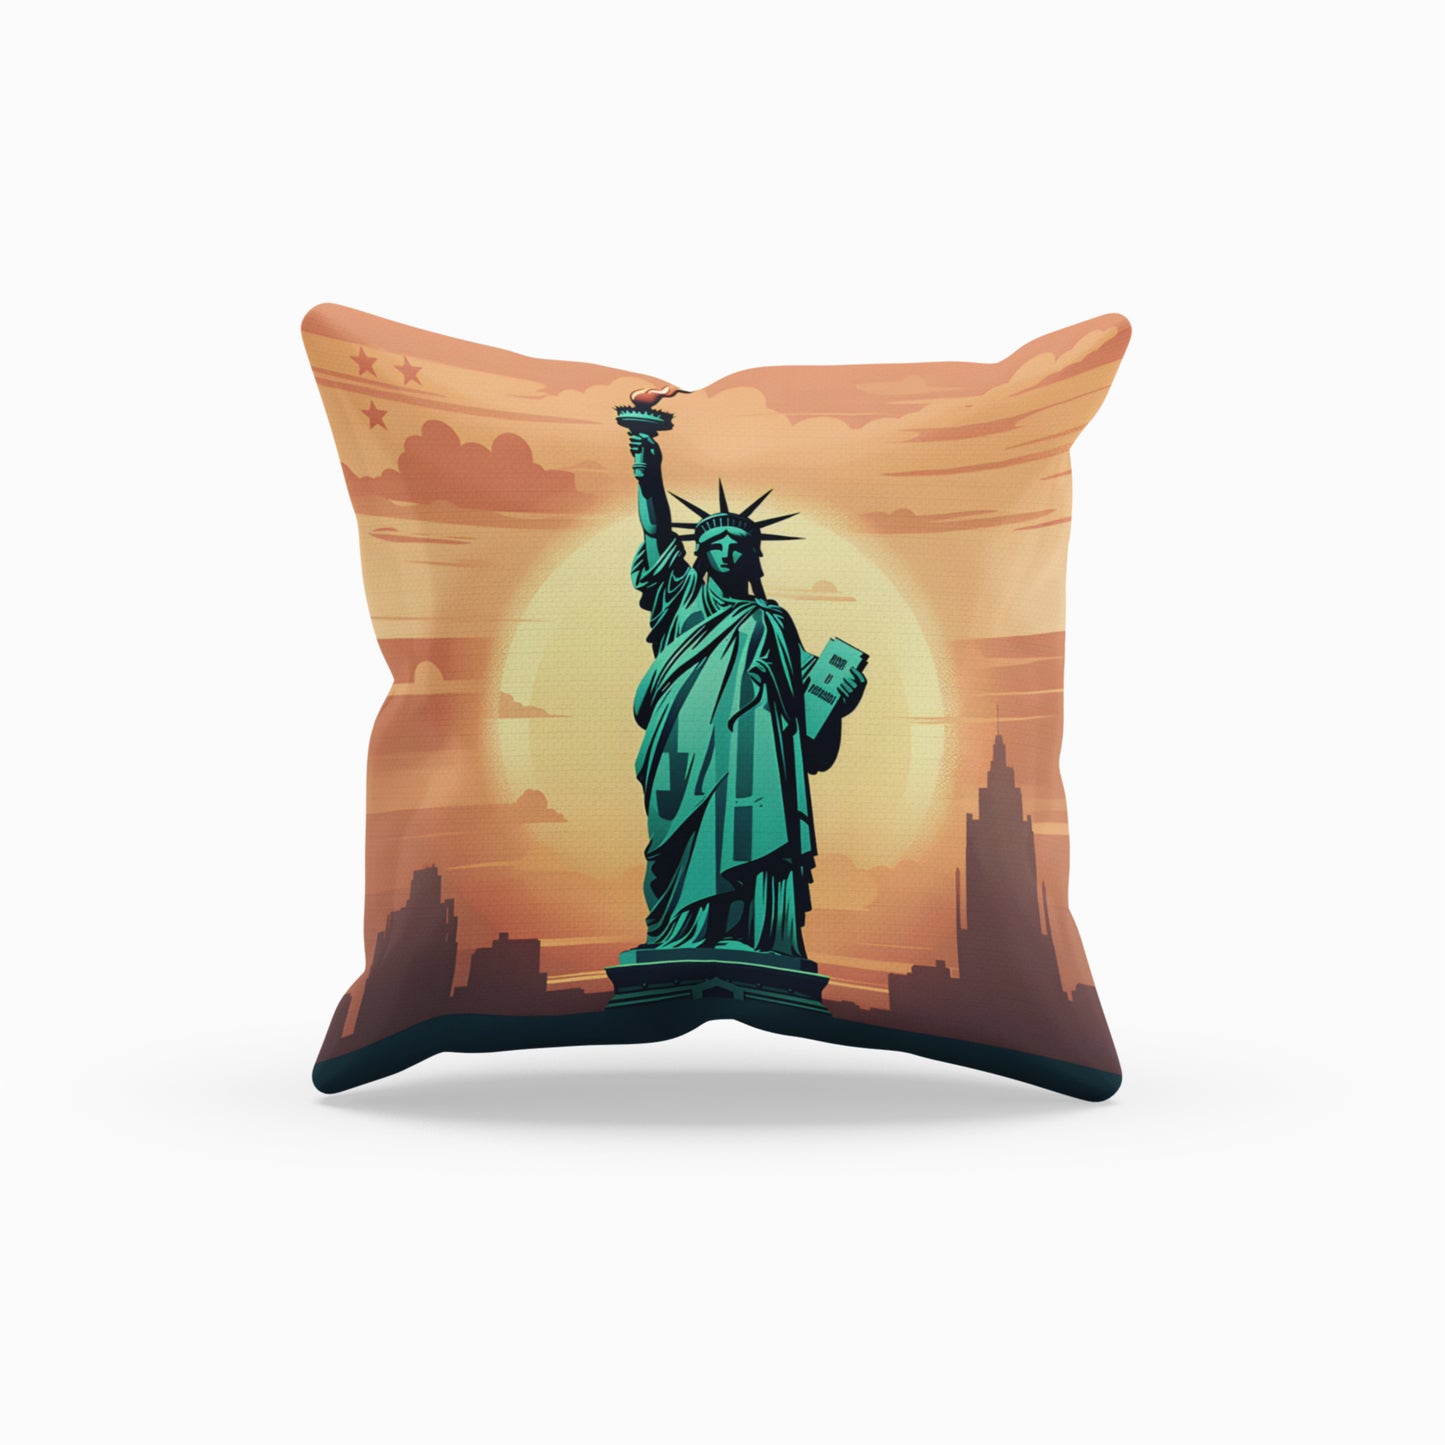 Homeezone's Liberty Statue Theme Pillow